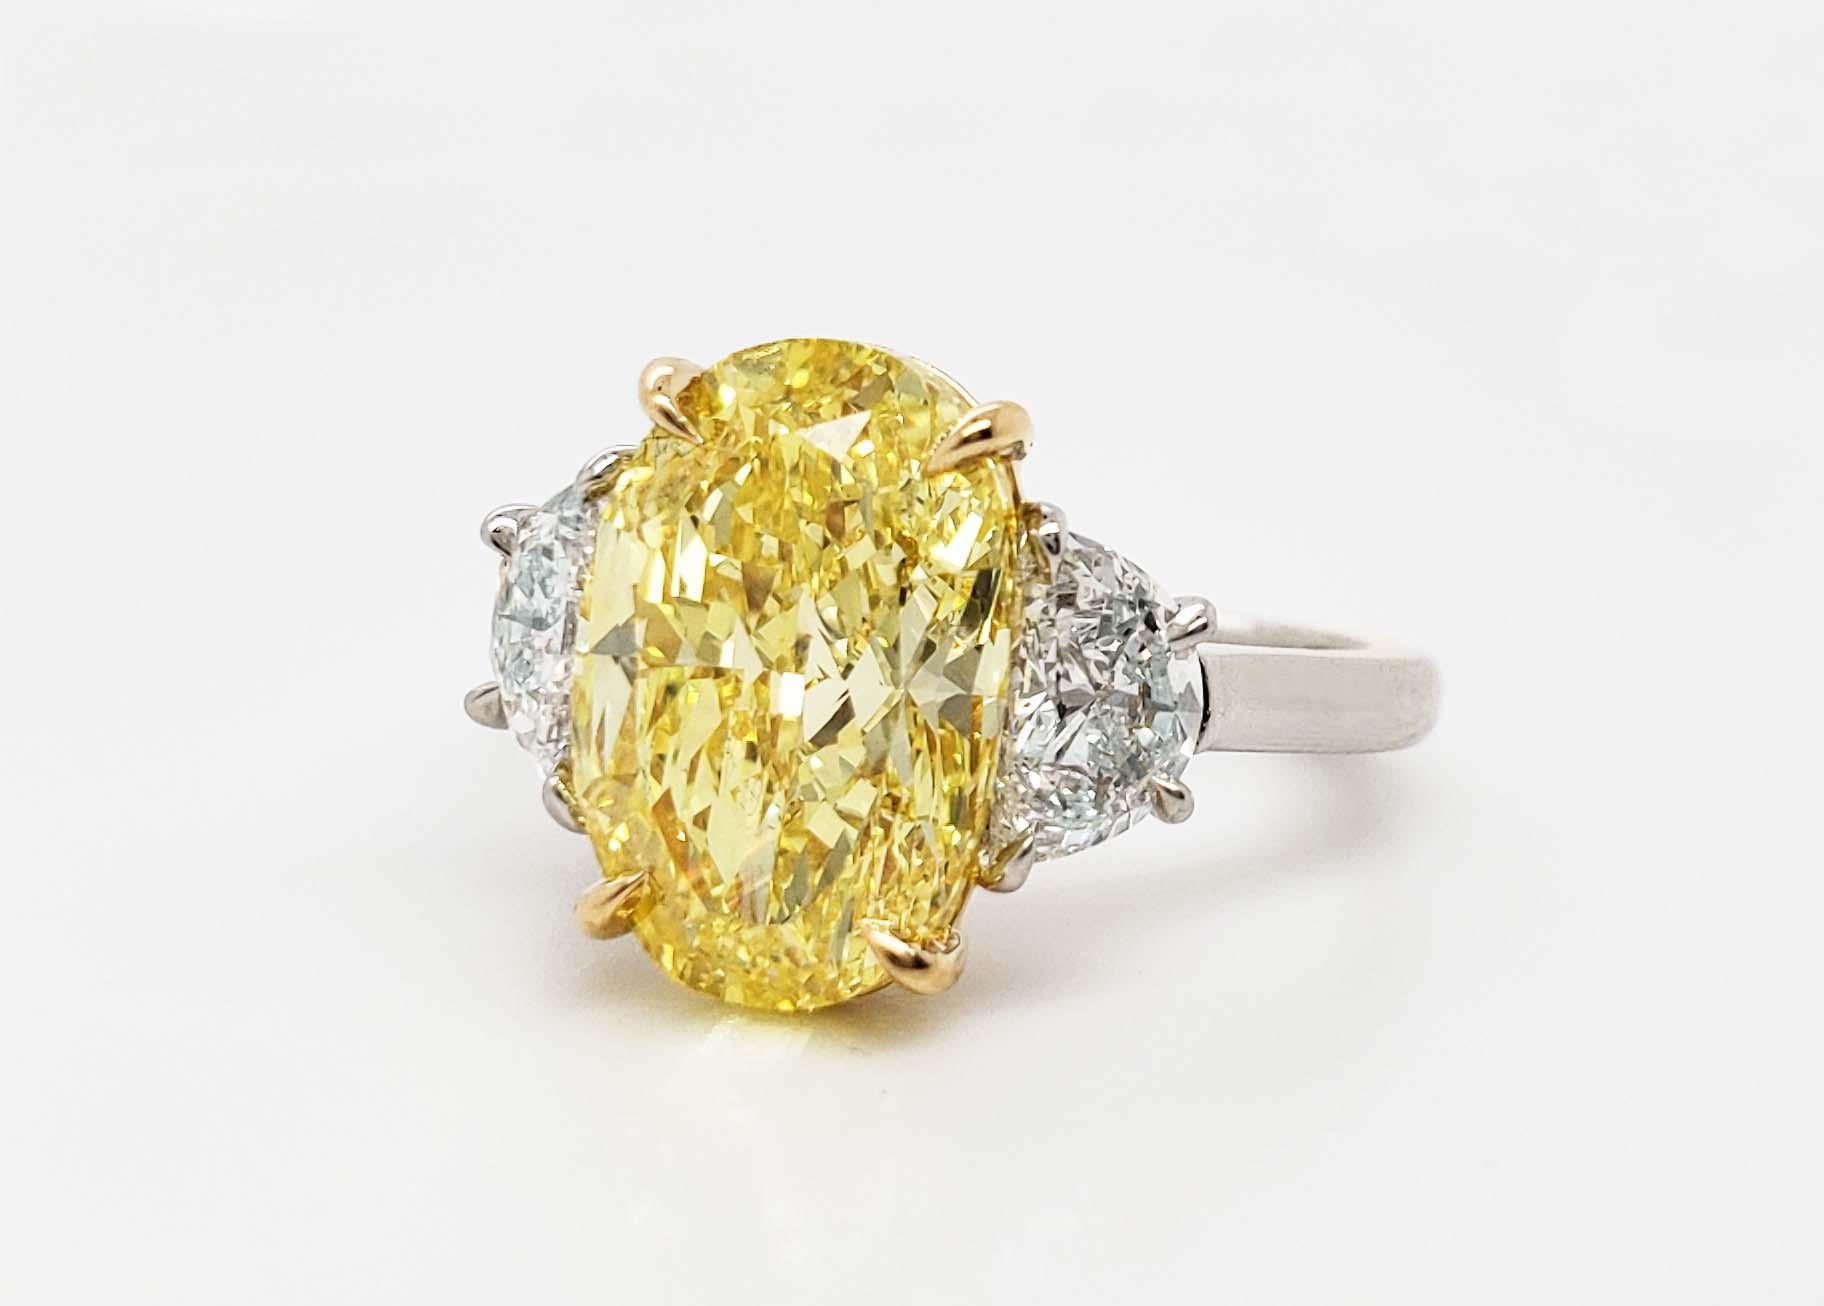 Von SCARSELLI, diese spektakuläre 4,70 Karat Fancy Vivid Yellow Oval Cut Diamond ist GIA zertifiziert (siehe Bild des Zertifikats für detaillierte Informationen Stein) und klassisch auf einem handgefertigten 18k Gold & Platin mit einem Paar von